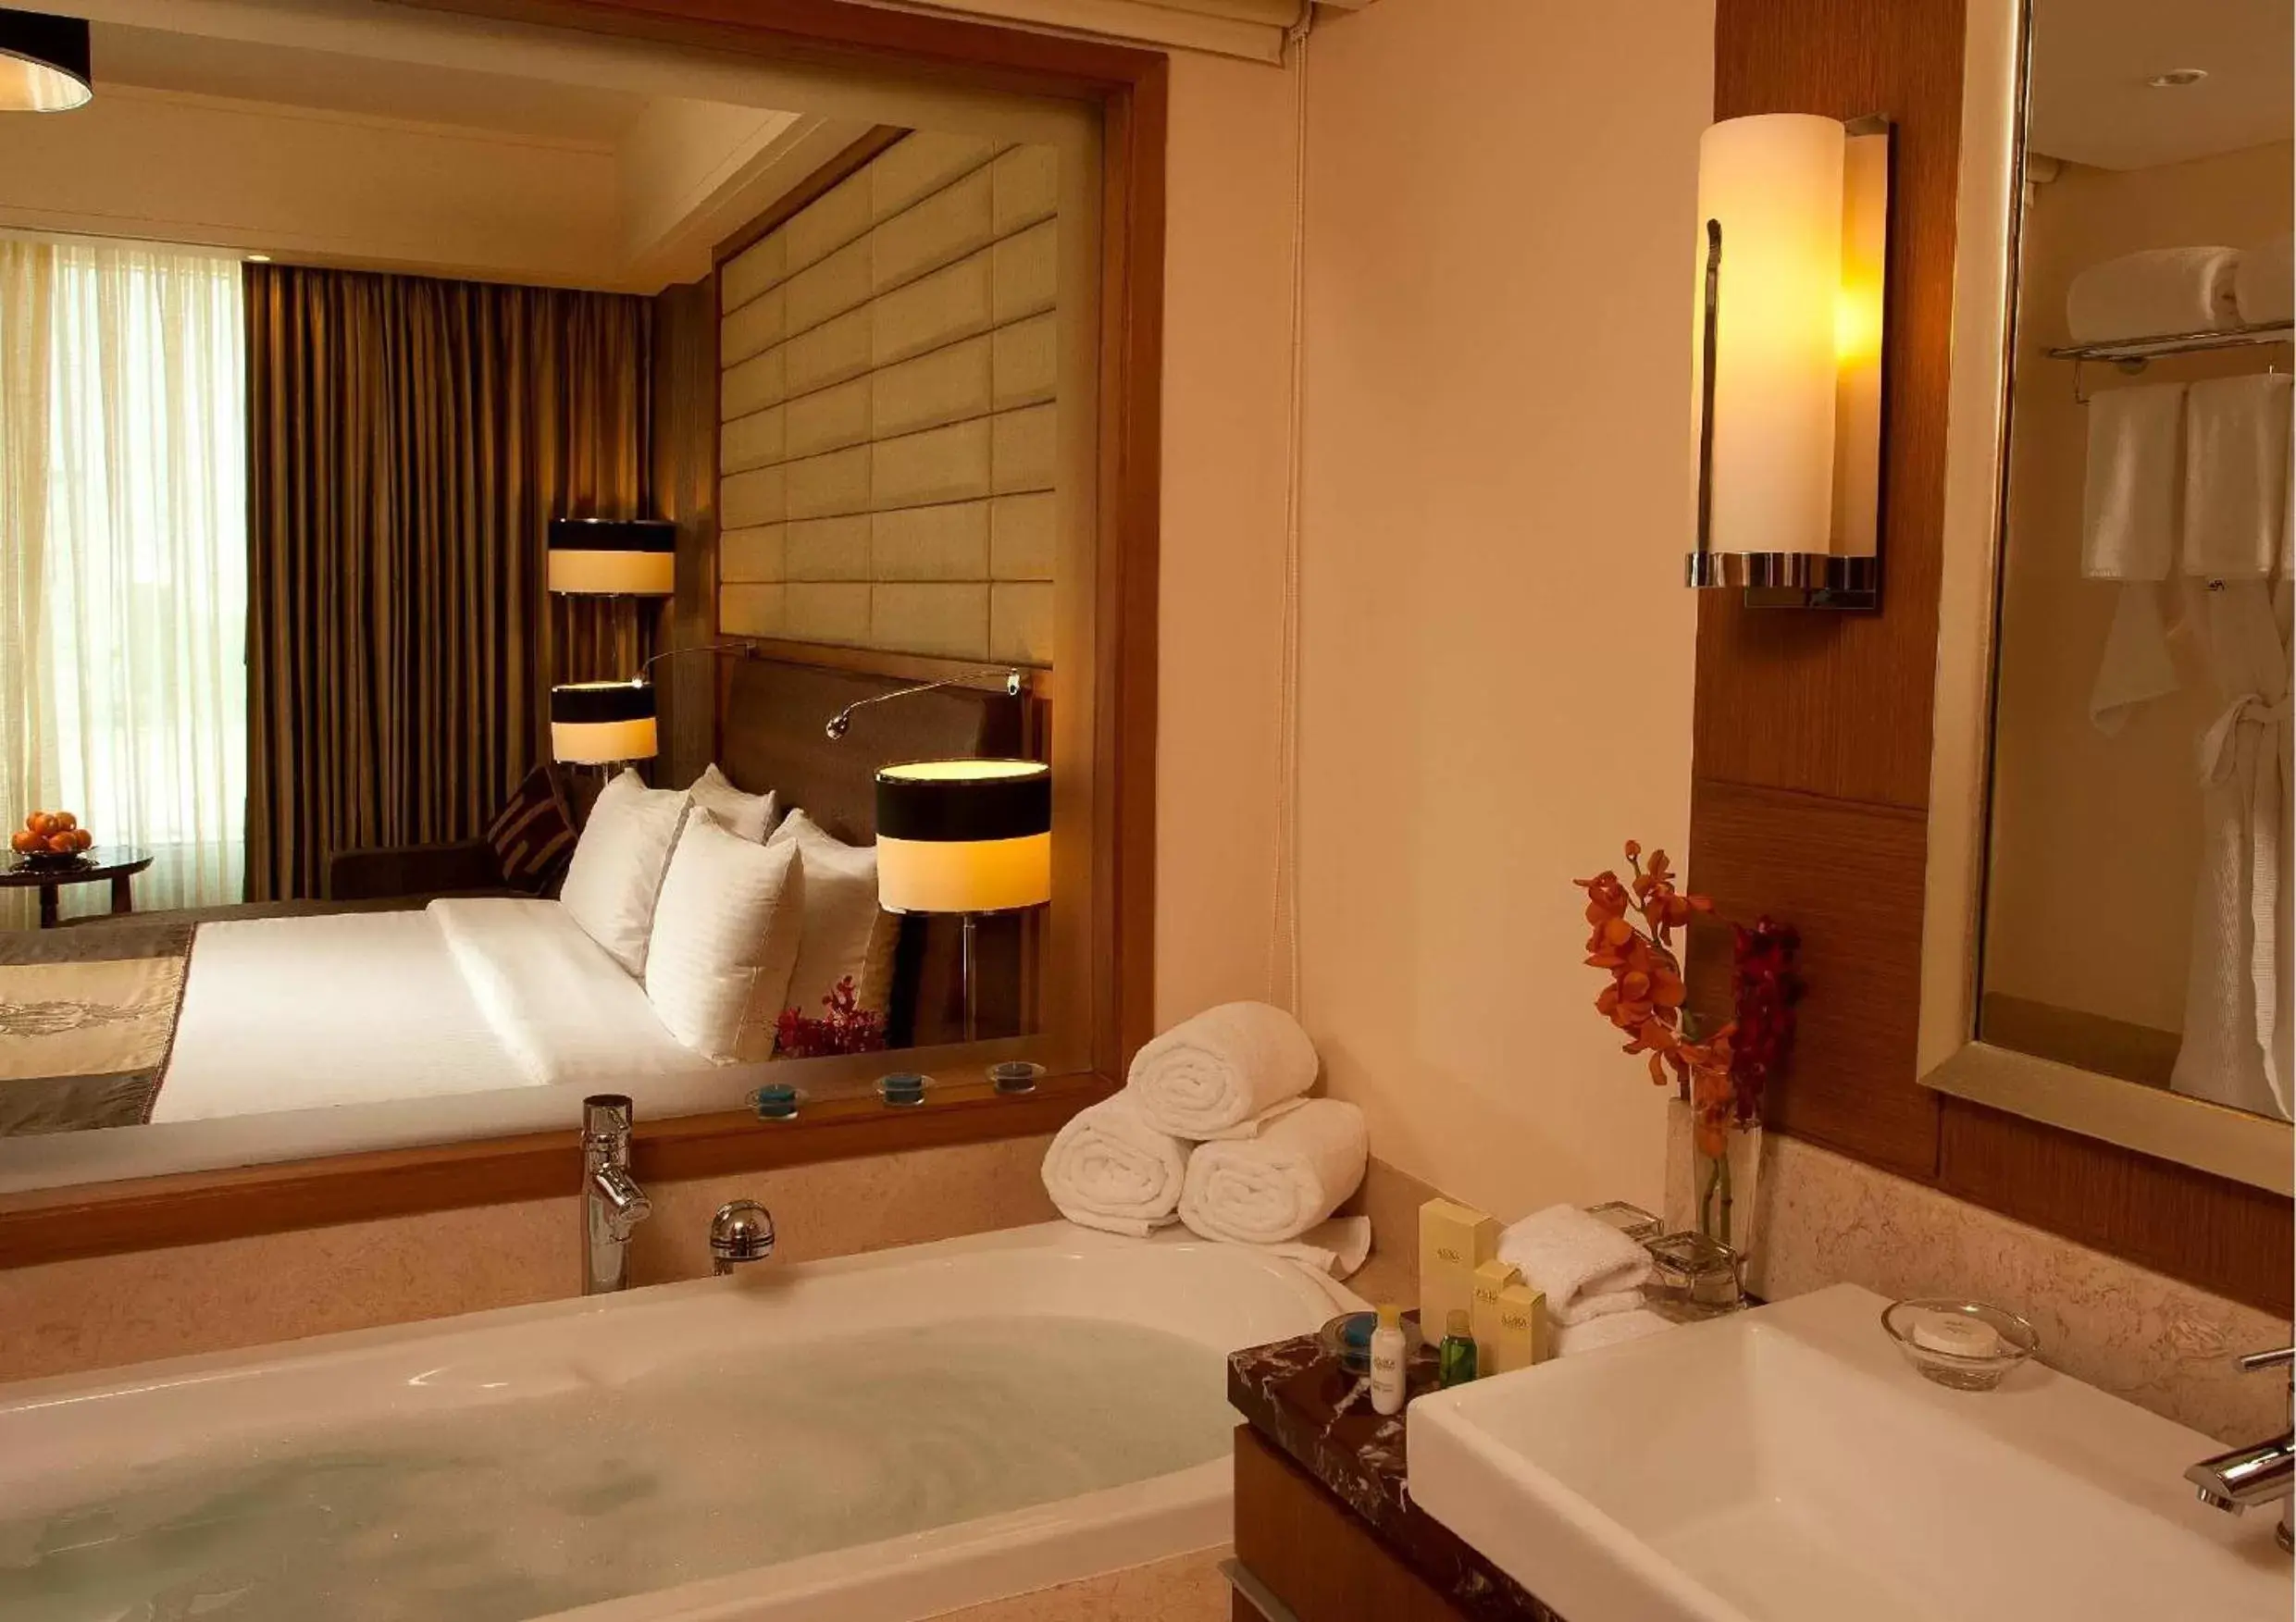 Shower, Bathroom in Radisson Blu Hotel, Nagpur